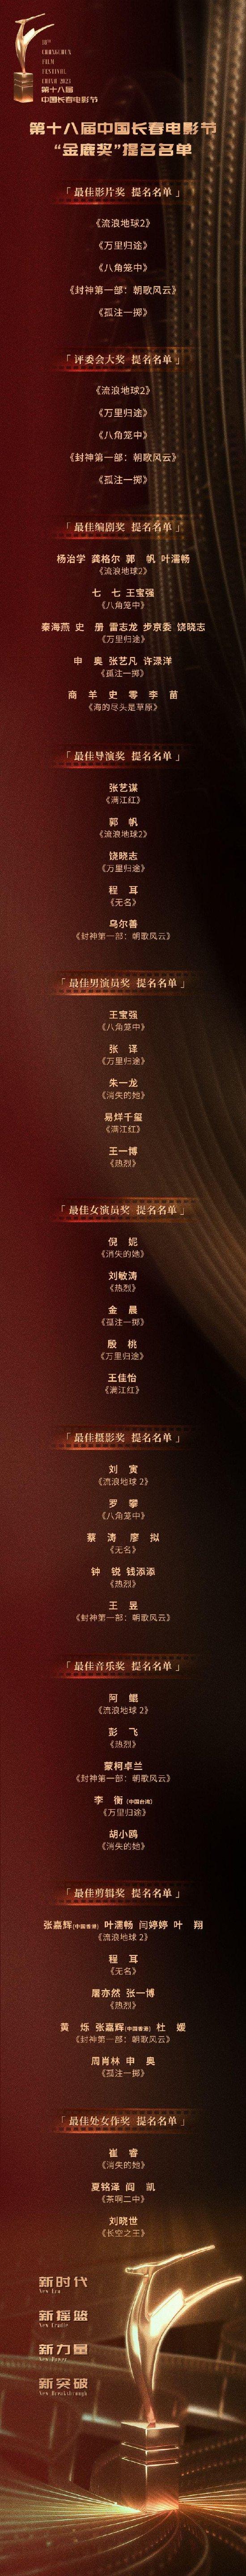 第十八届中国长春电影节“金鹿奖”提名名单